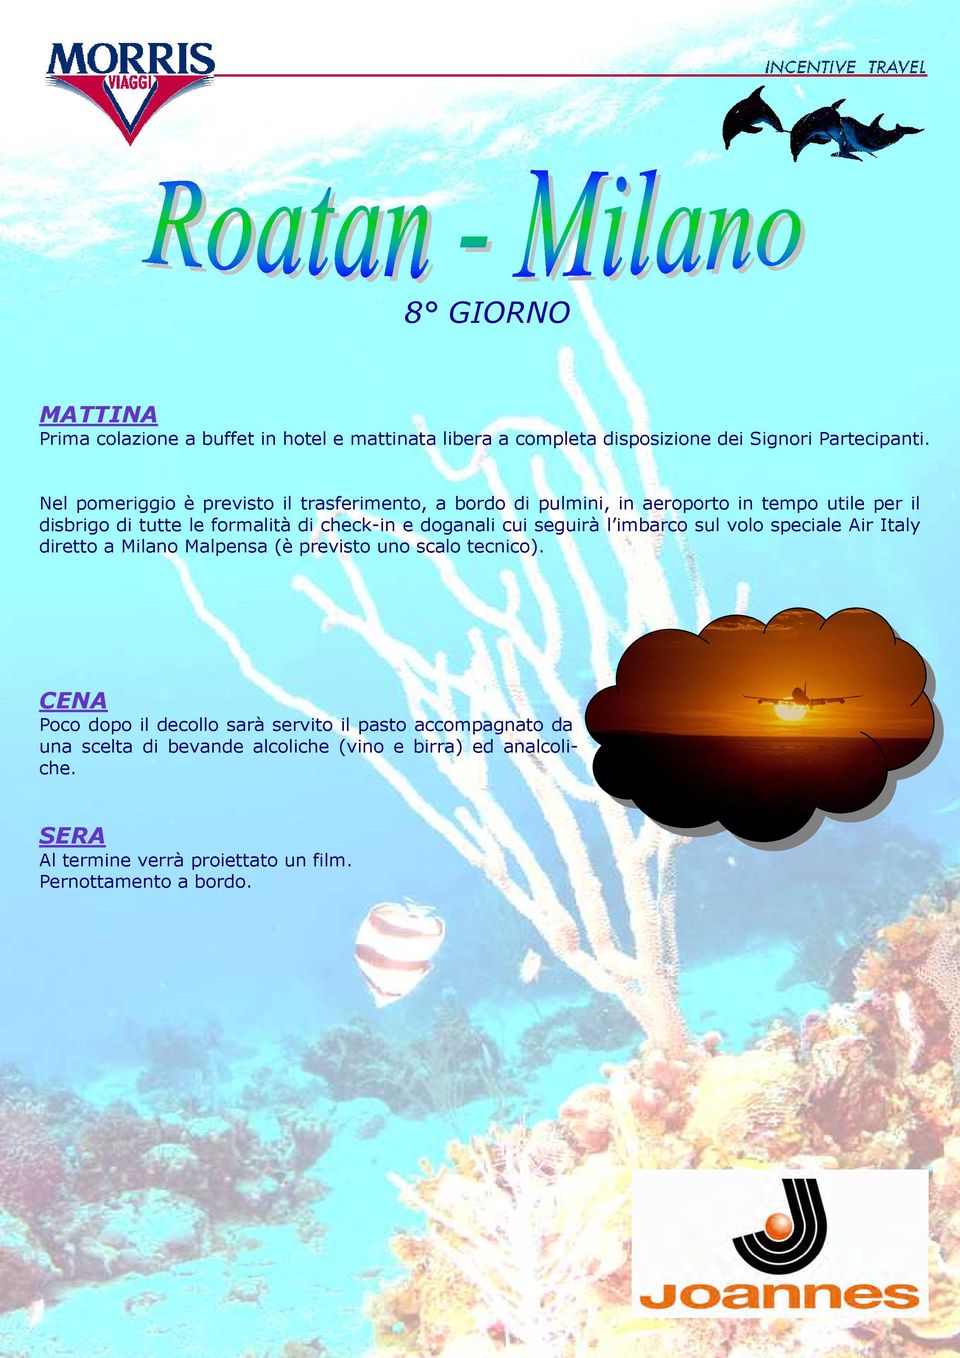 check-in e doganali cui seguirà l imbarco sul volo speciale Air Italy diretto a Milano Malpensa (è previsto uno scalo tecnico).